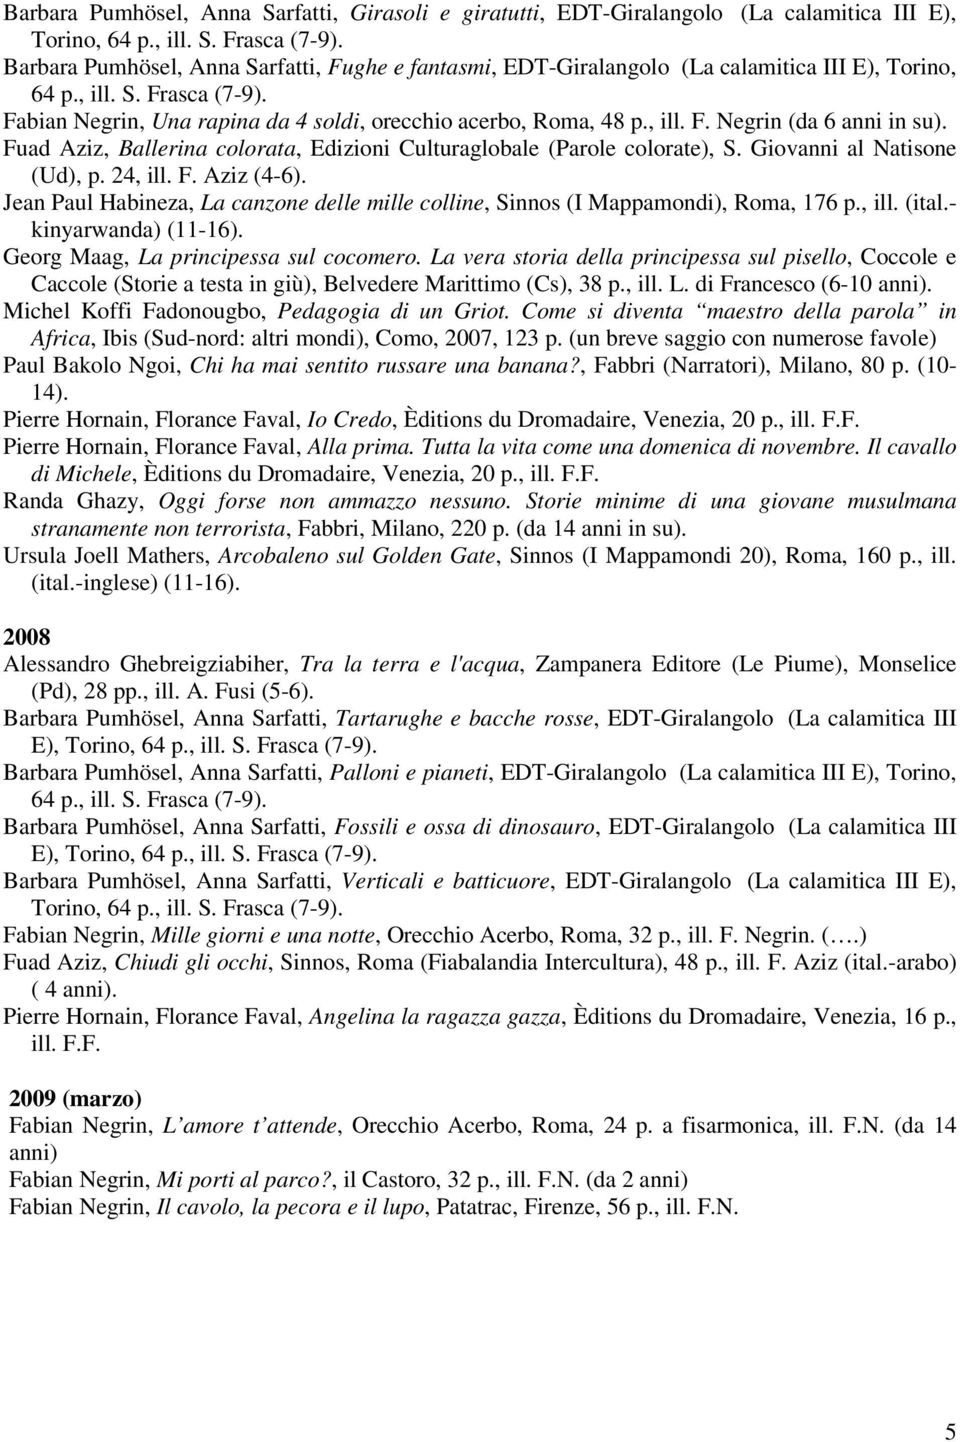 Giovanni al Natisone (Ud), p. 24, ill. F. Aziz (4-6). Jean Paul Habineza, La canzone delle mille colline, Sinnos (I Mappamondi), Roma, 176 p., ill. (ital.- kinyarwanda) (11-16).